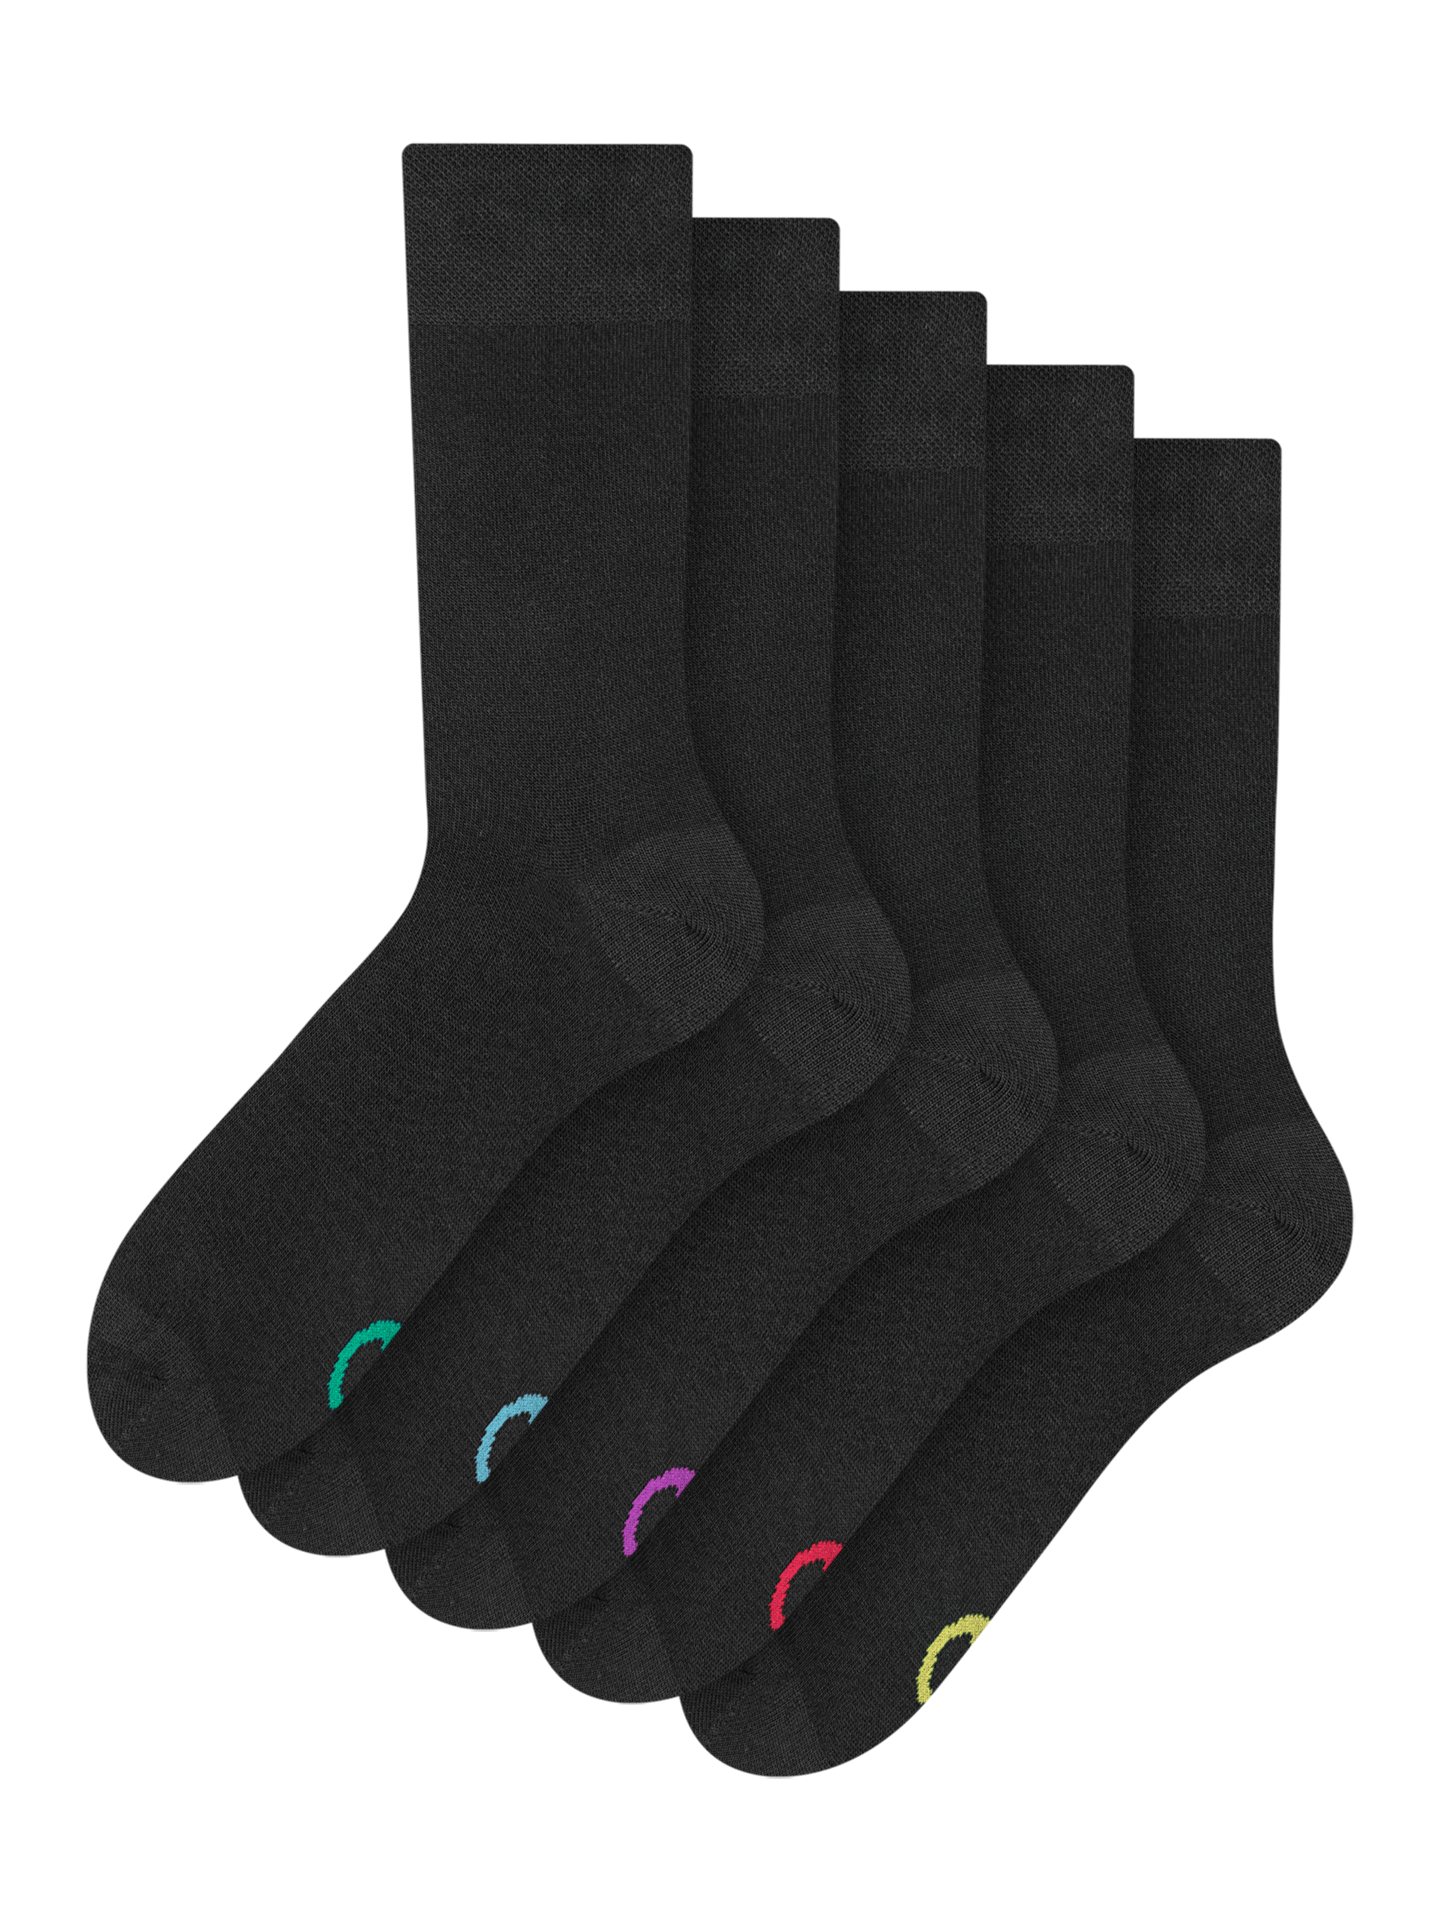 Regular Socks 5-Pack Black Classic